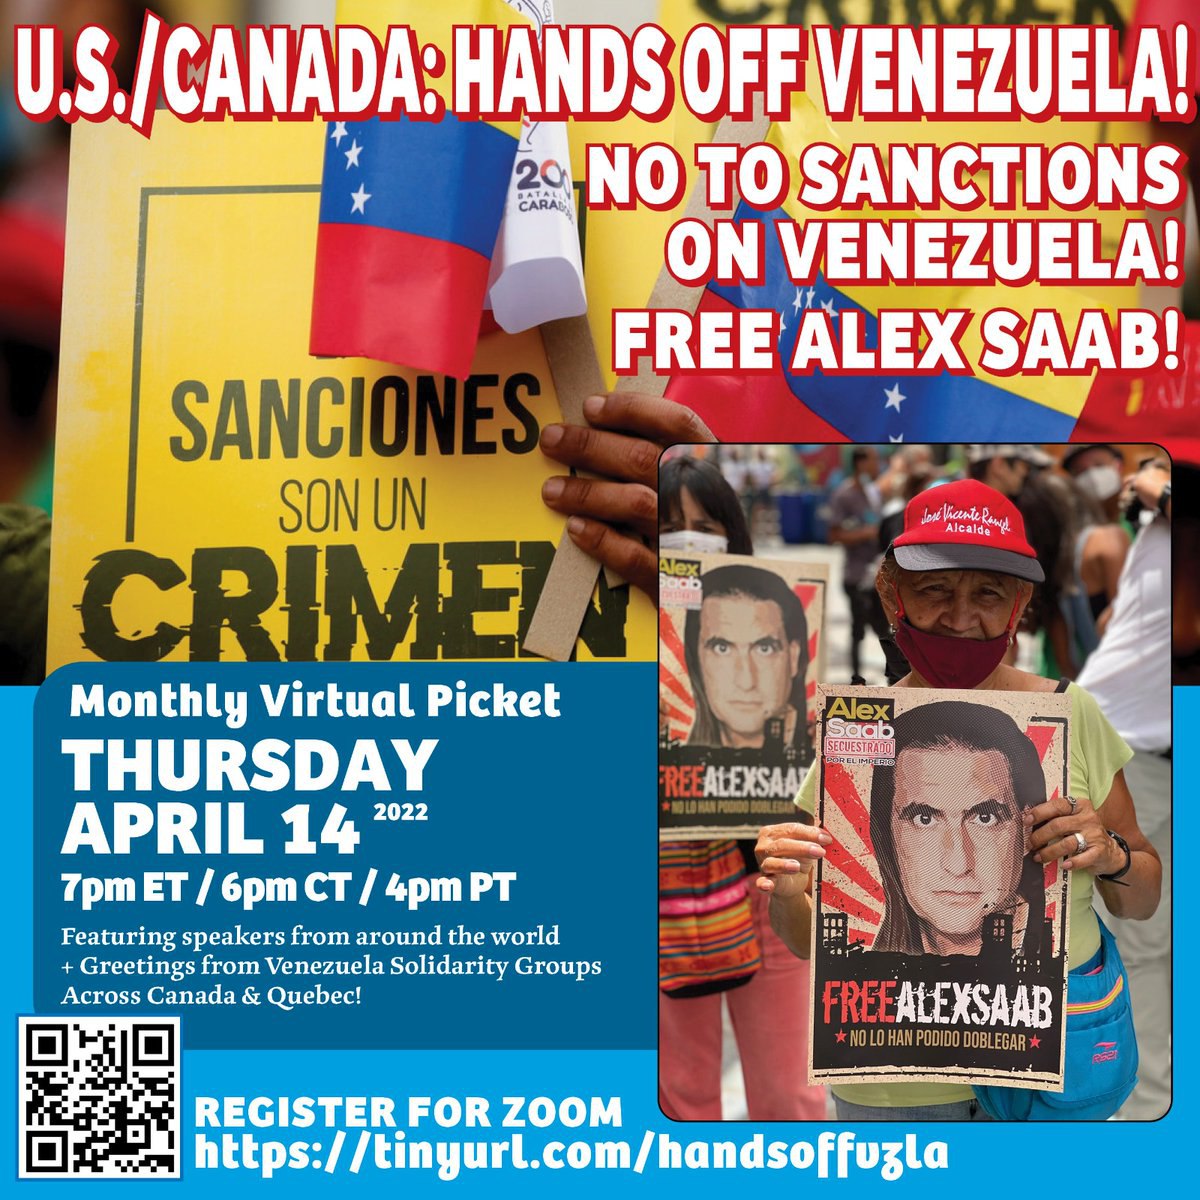 Imperdible este webinar 👉 Hands off Venezuela 🇻🇪

Este #14Abril con el Prof. Luis Acuña, Encargado de Negocios de 🇻🇪 en Canadá @lacunasucre,
@UniondelBarrio y la Prof @RadDesai

@blumo0n @StateSEHI @ONU_es 

#handsoffvenezuela
 #11AResiste